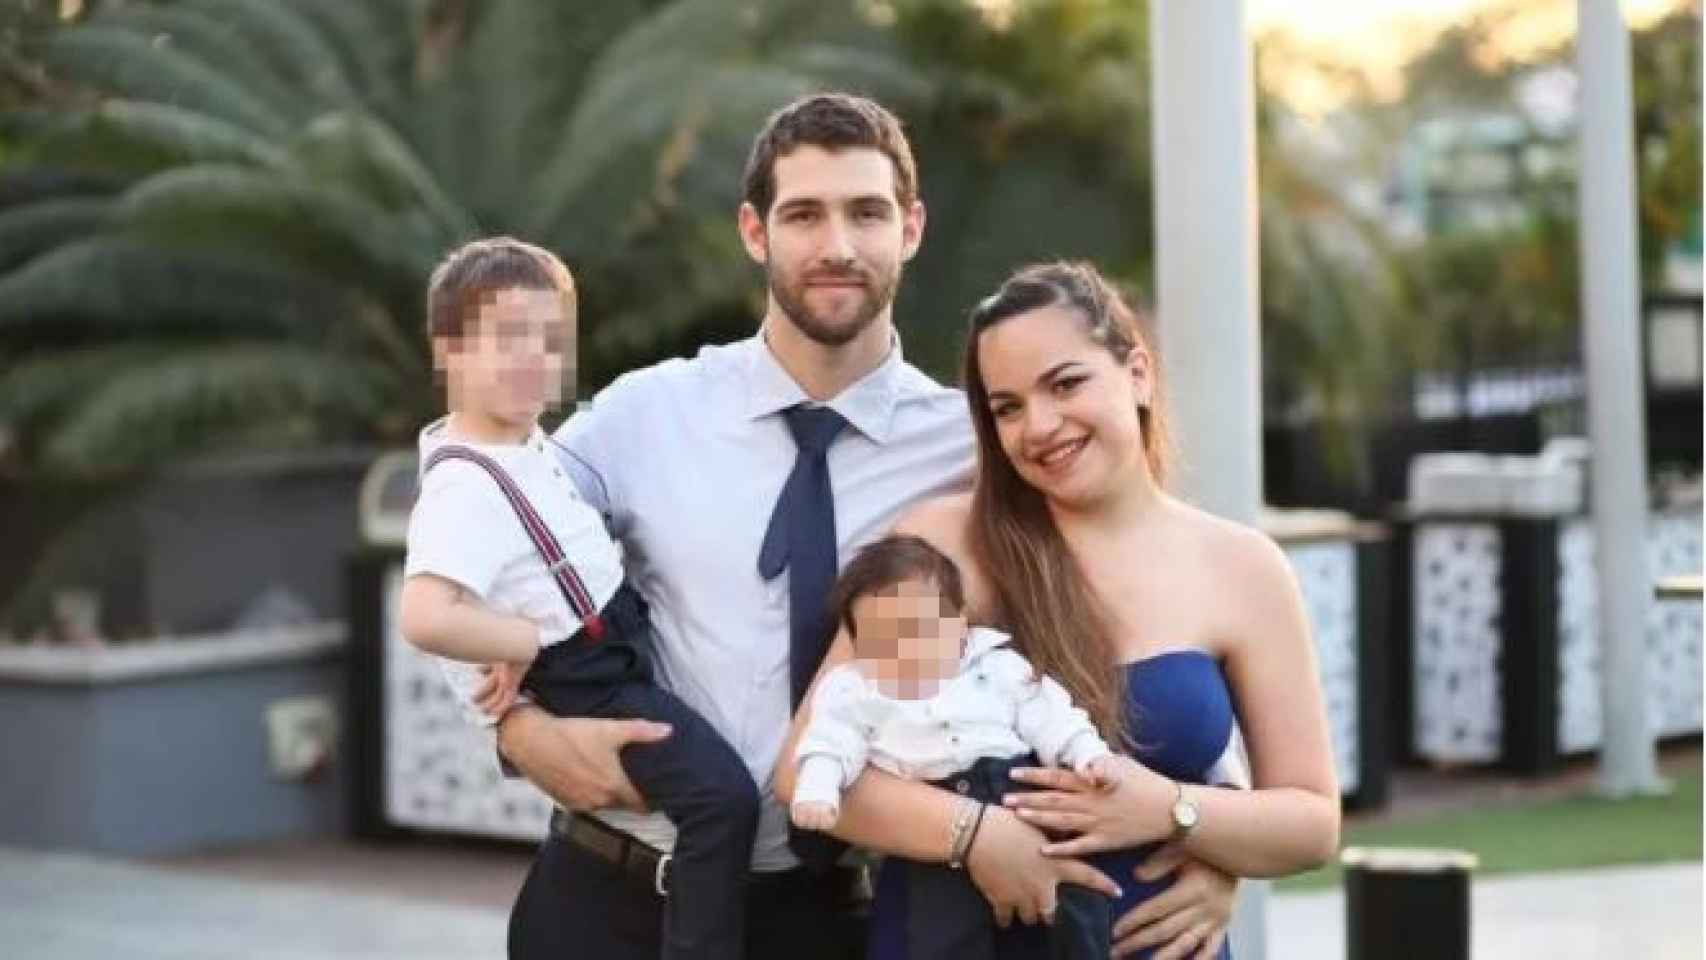 La familia Biran, con el pequeño Eitan a la izquierda, en brazos de su padre.